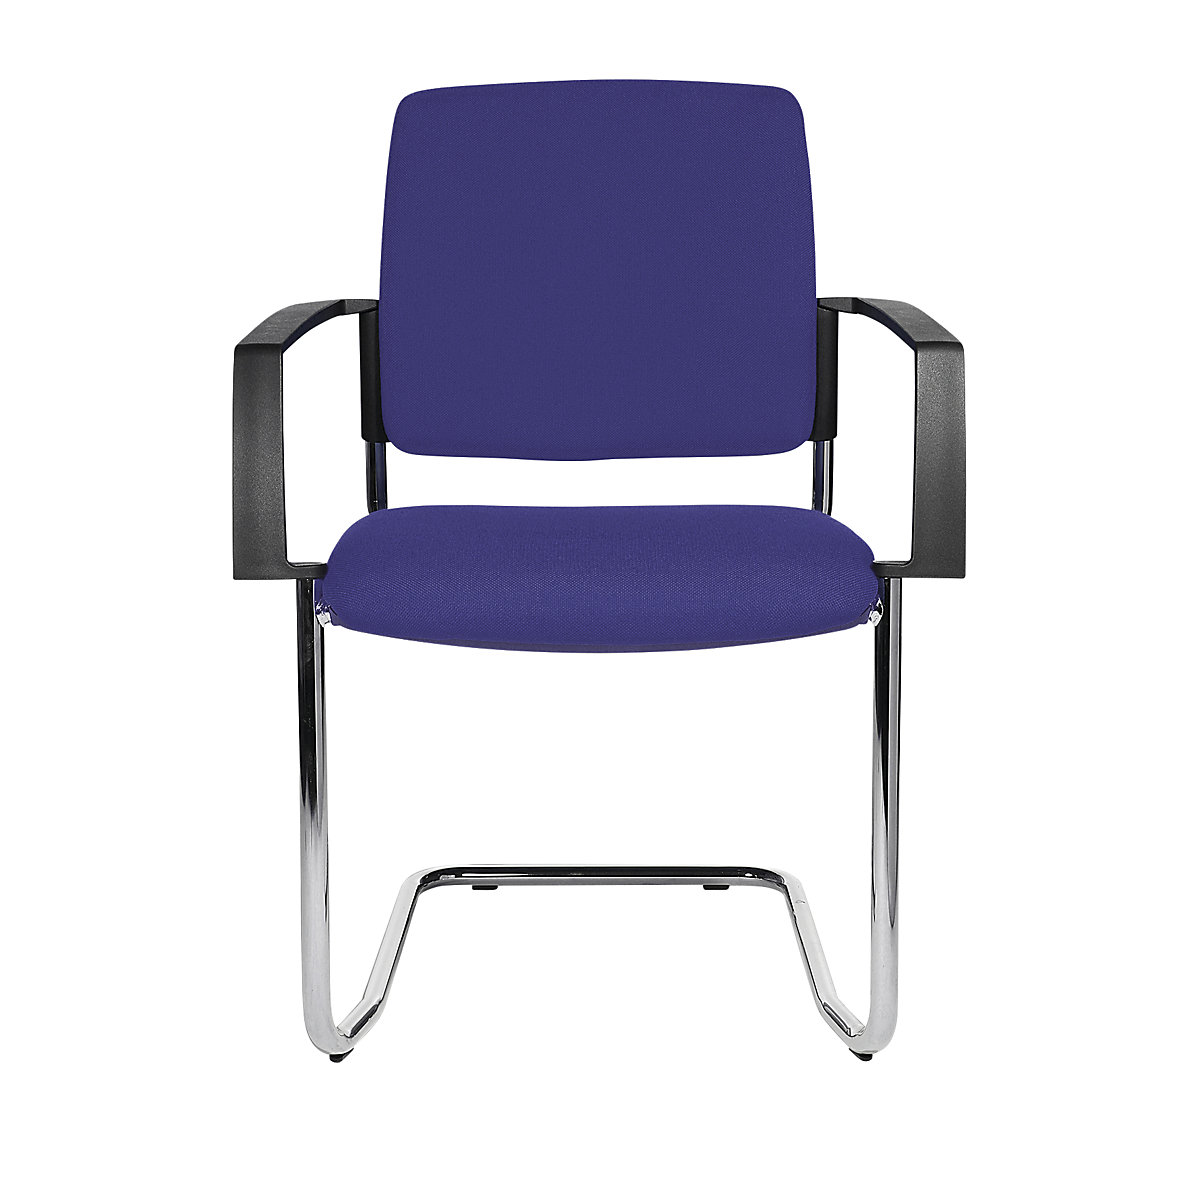 Čalúnená stohovacia stolička – Topstar, kreslo na pružnom podloží, OJ 2 ks, podstavec pochrómovaný, čalúnenie modrá-1